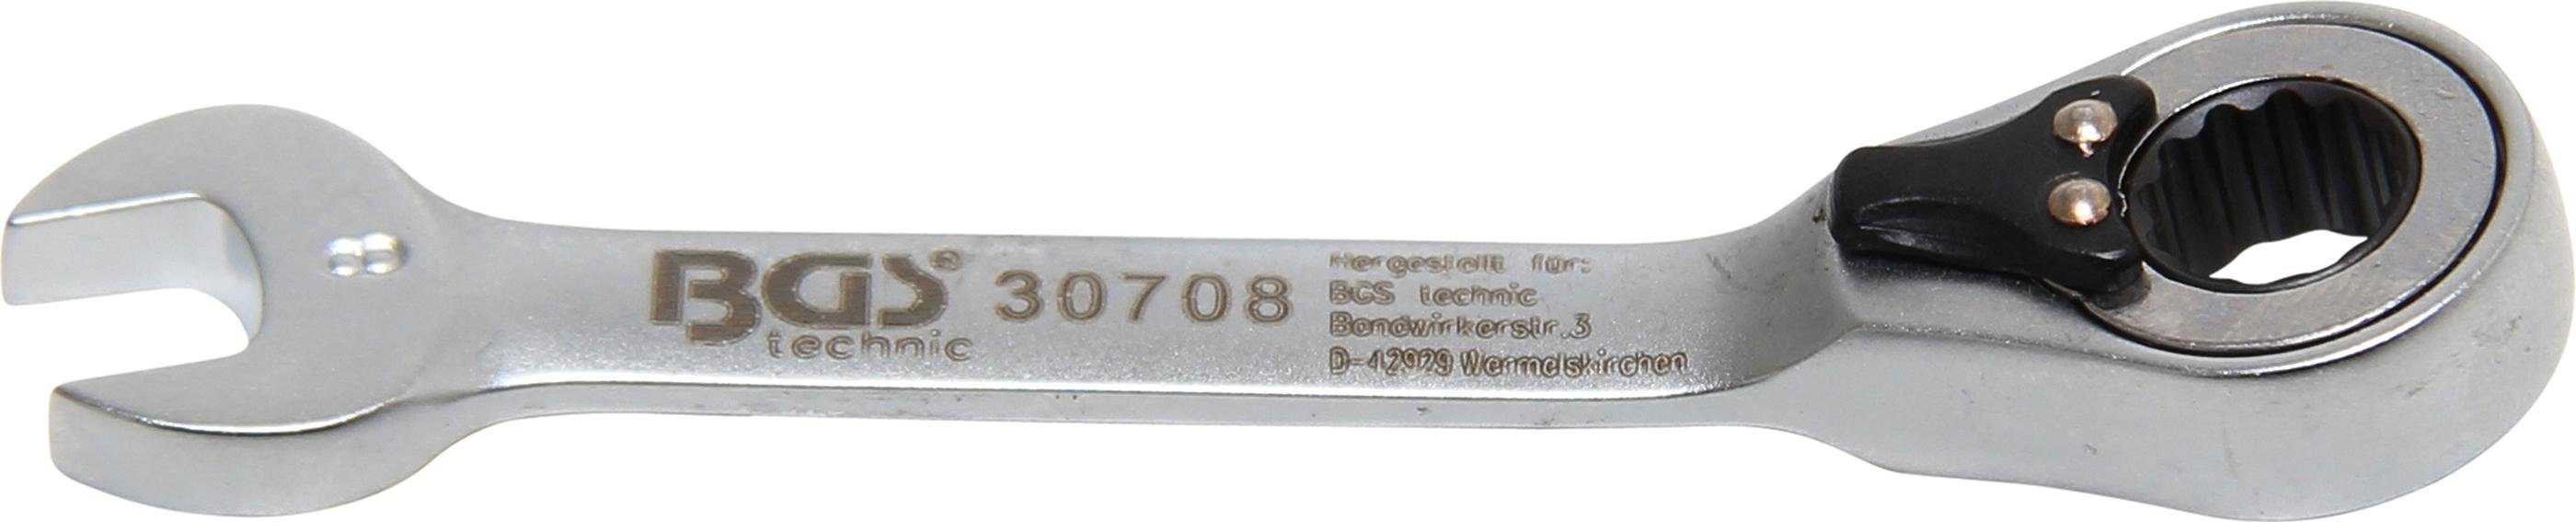 BGS technic Stecknuss Ratschenring-Maulschlüssel, kurz, umschaltbar, SW 8 mm